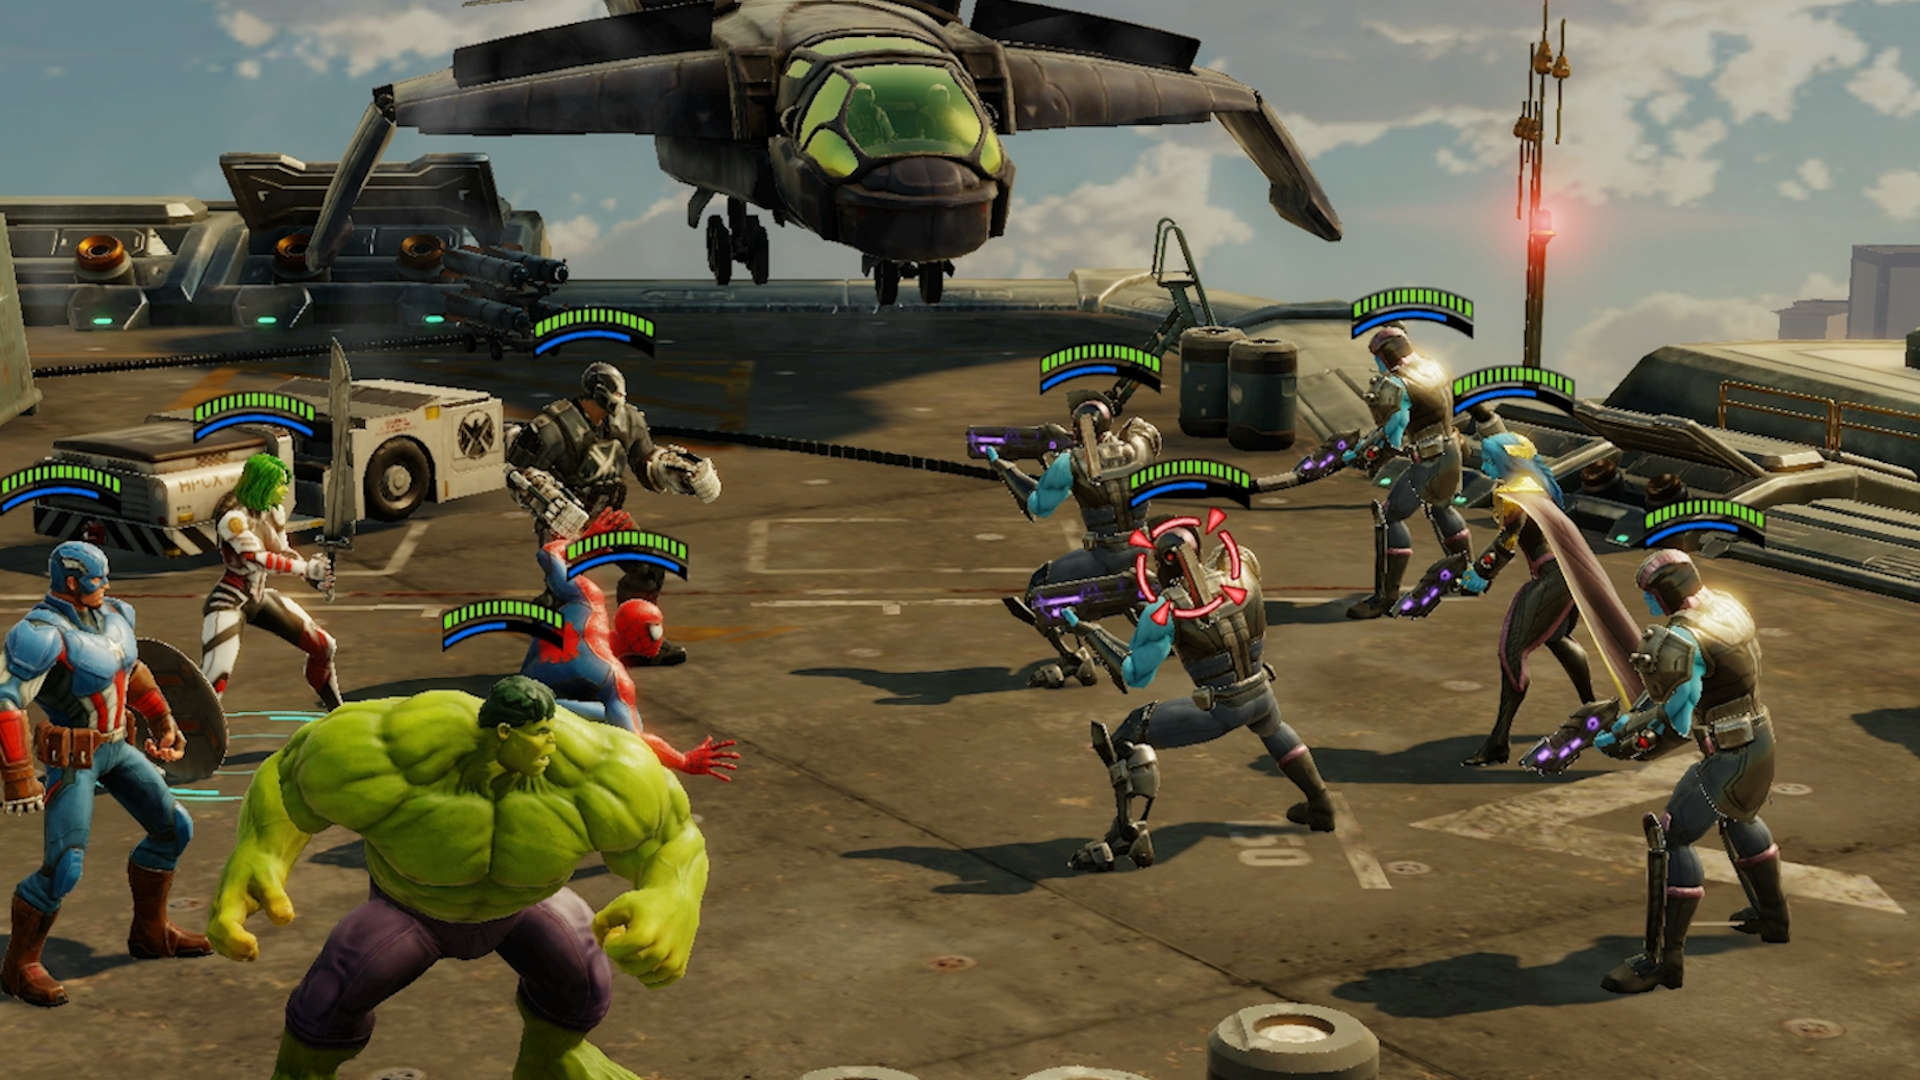 最佳GACHA遊戲：漫威罷工部隊。圖像顯示了戰鬥中的一群漫威角色，包括美國隊長和令人難以置信的綠巨人。